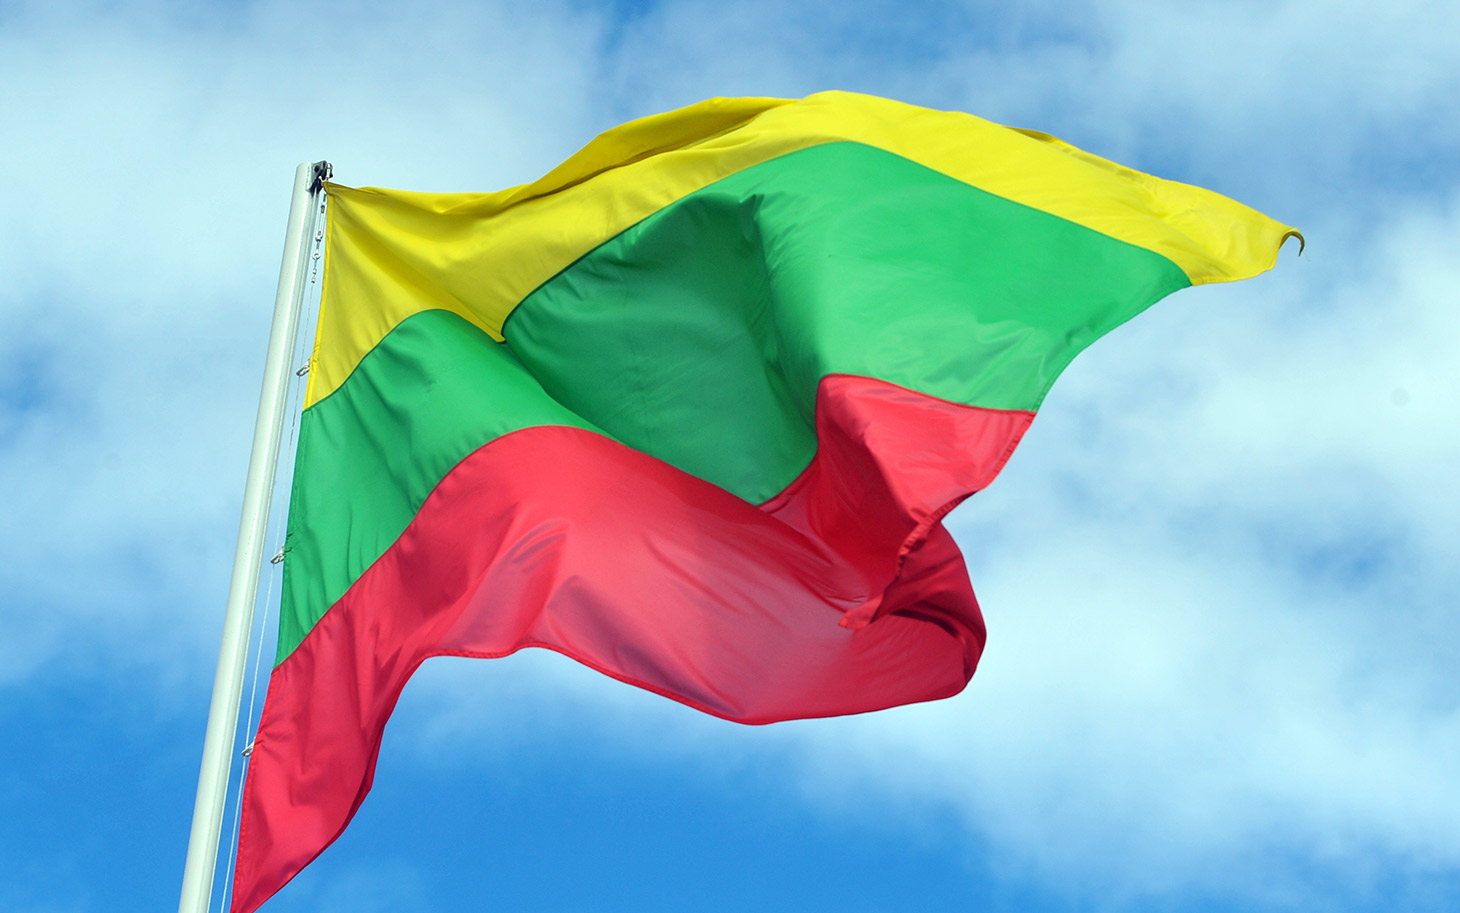 Kūrybiškas ir darbščias bendruomenes, šalies patriotus Panevėžio lopšelis-darželis „Puriena“ kviečia švęsti Valstybės dieną, siekiant Lietuvos rekordo.